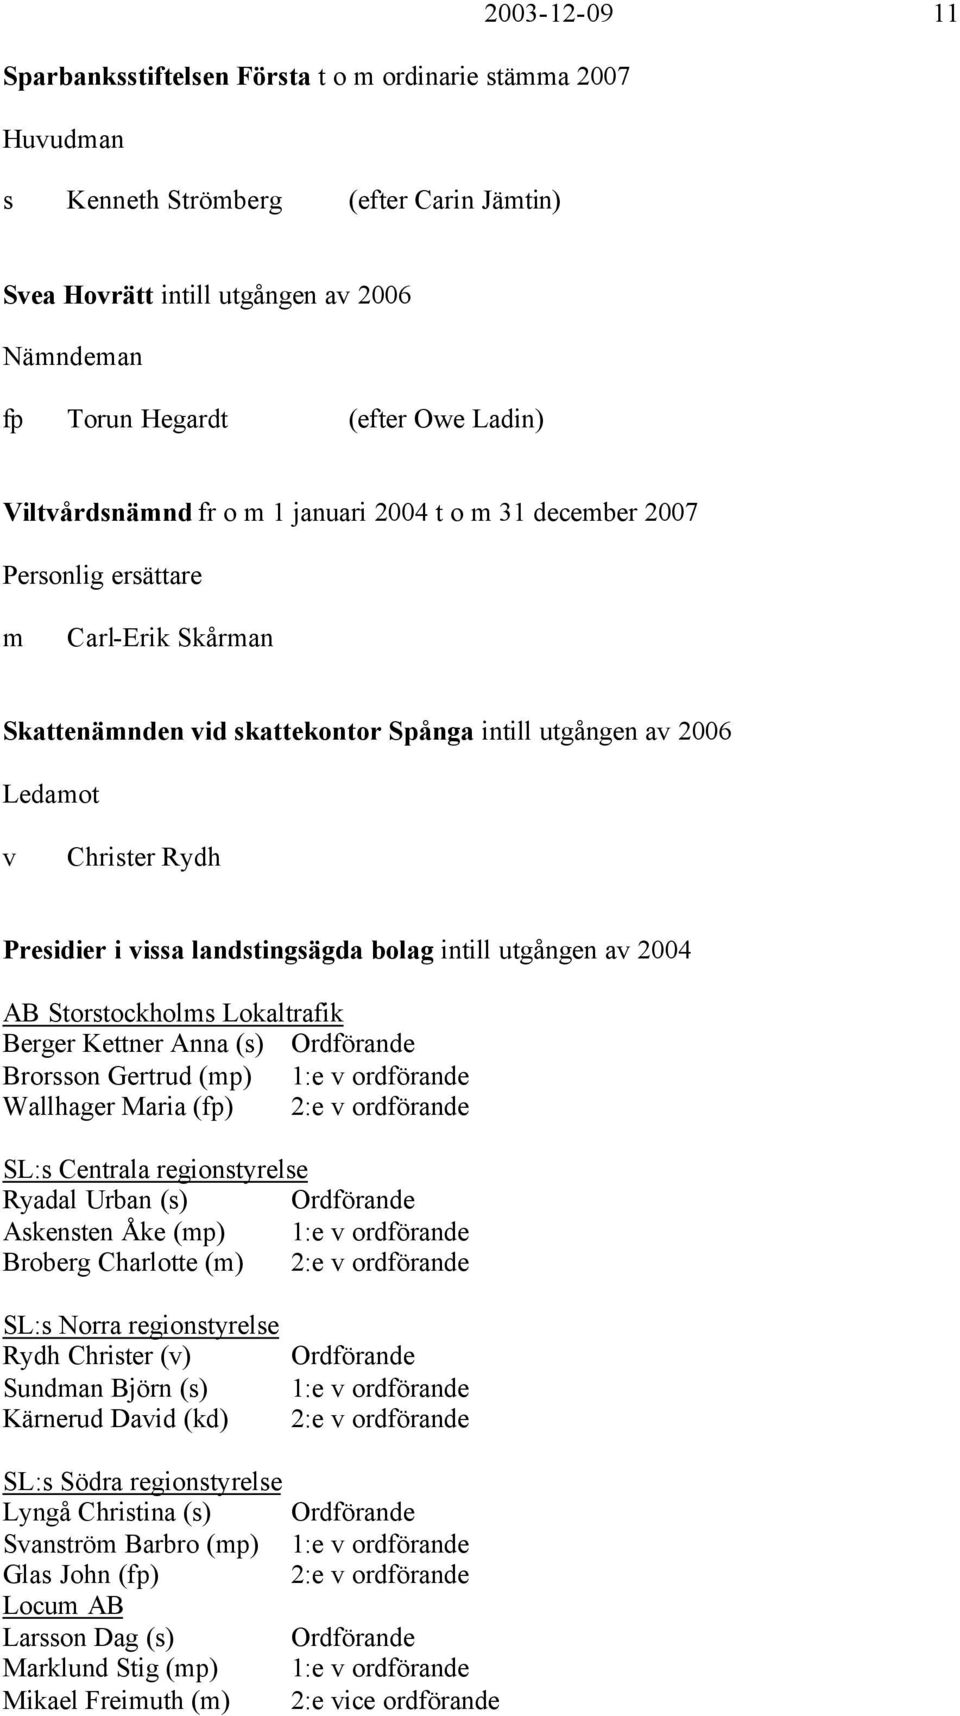 Presidier i vissa landstingsägda bolag intill utgången av 2004 AB Storstockholms Lokaltrafik Berger Kettner Anna (s) Ordförande Brorsson Gertrud (mp) 1:e v ordförande Wallhager Maria (fp) 2:e v